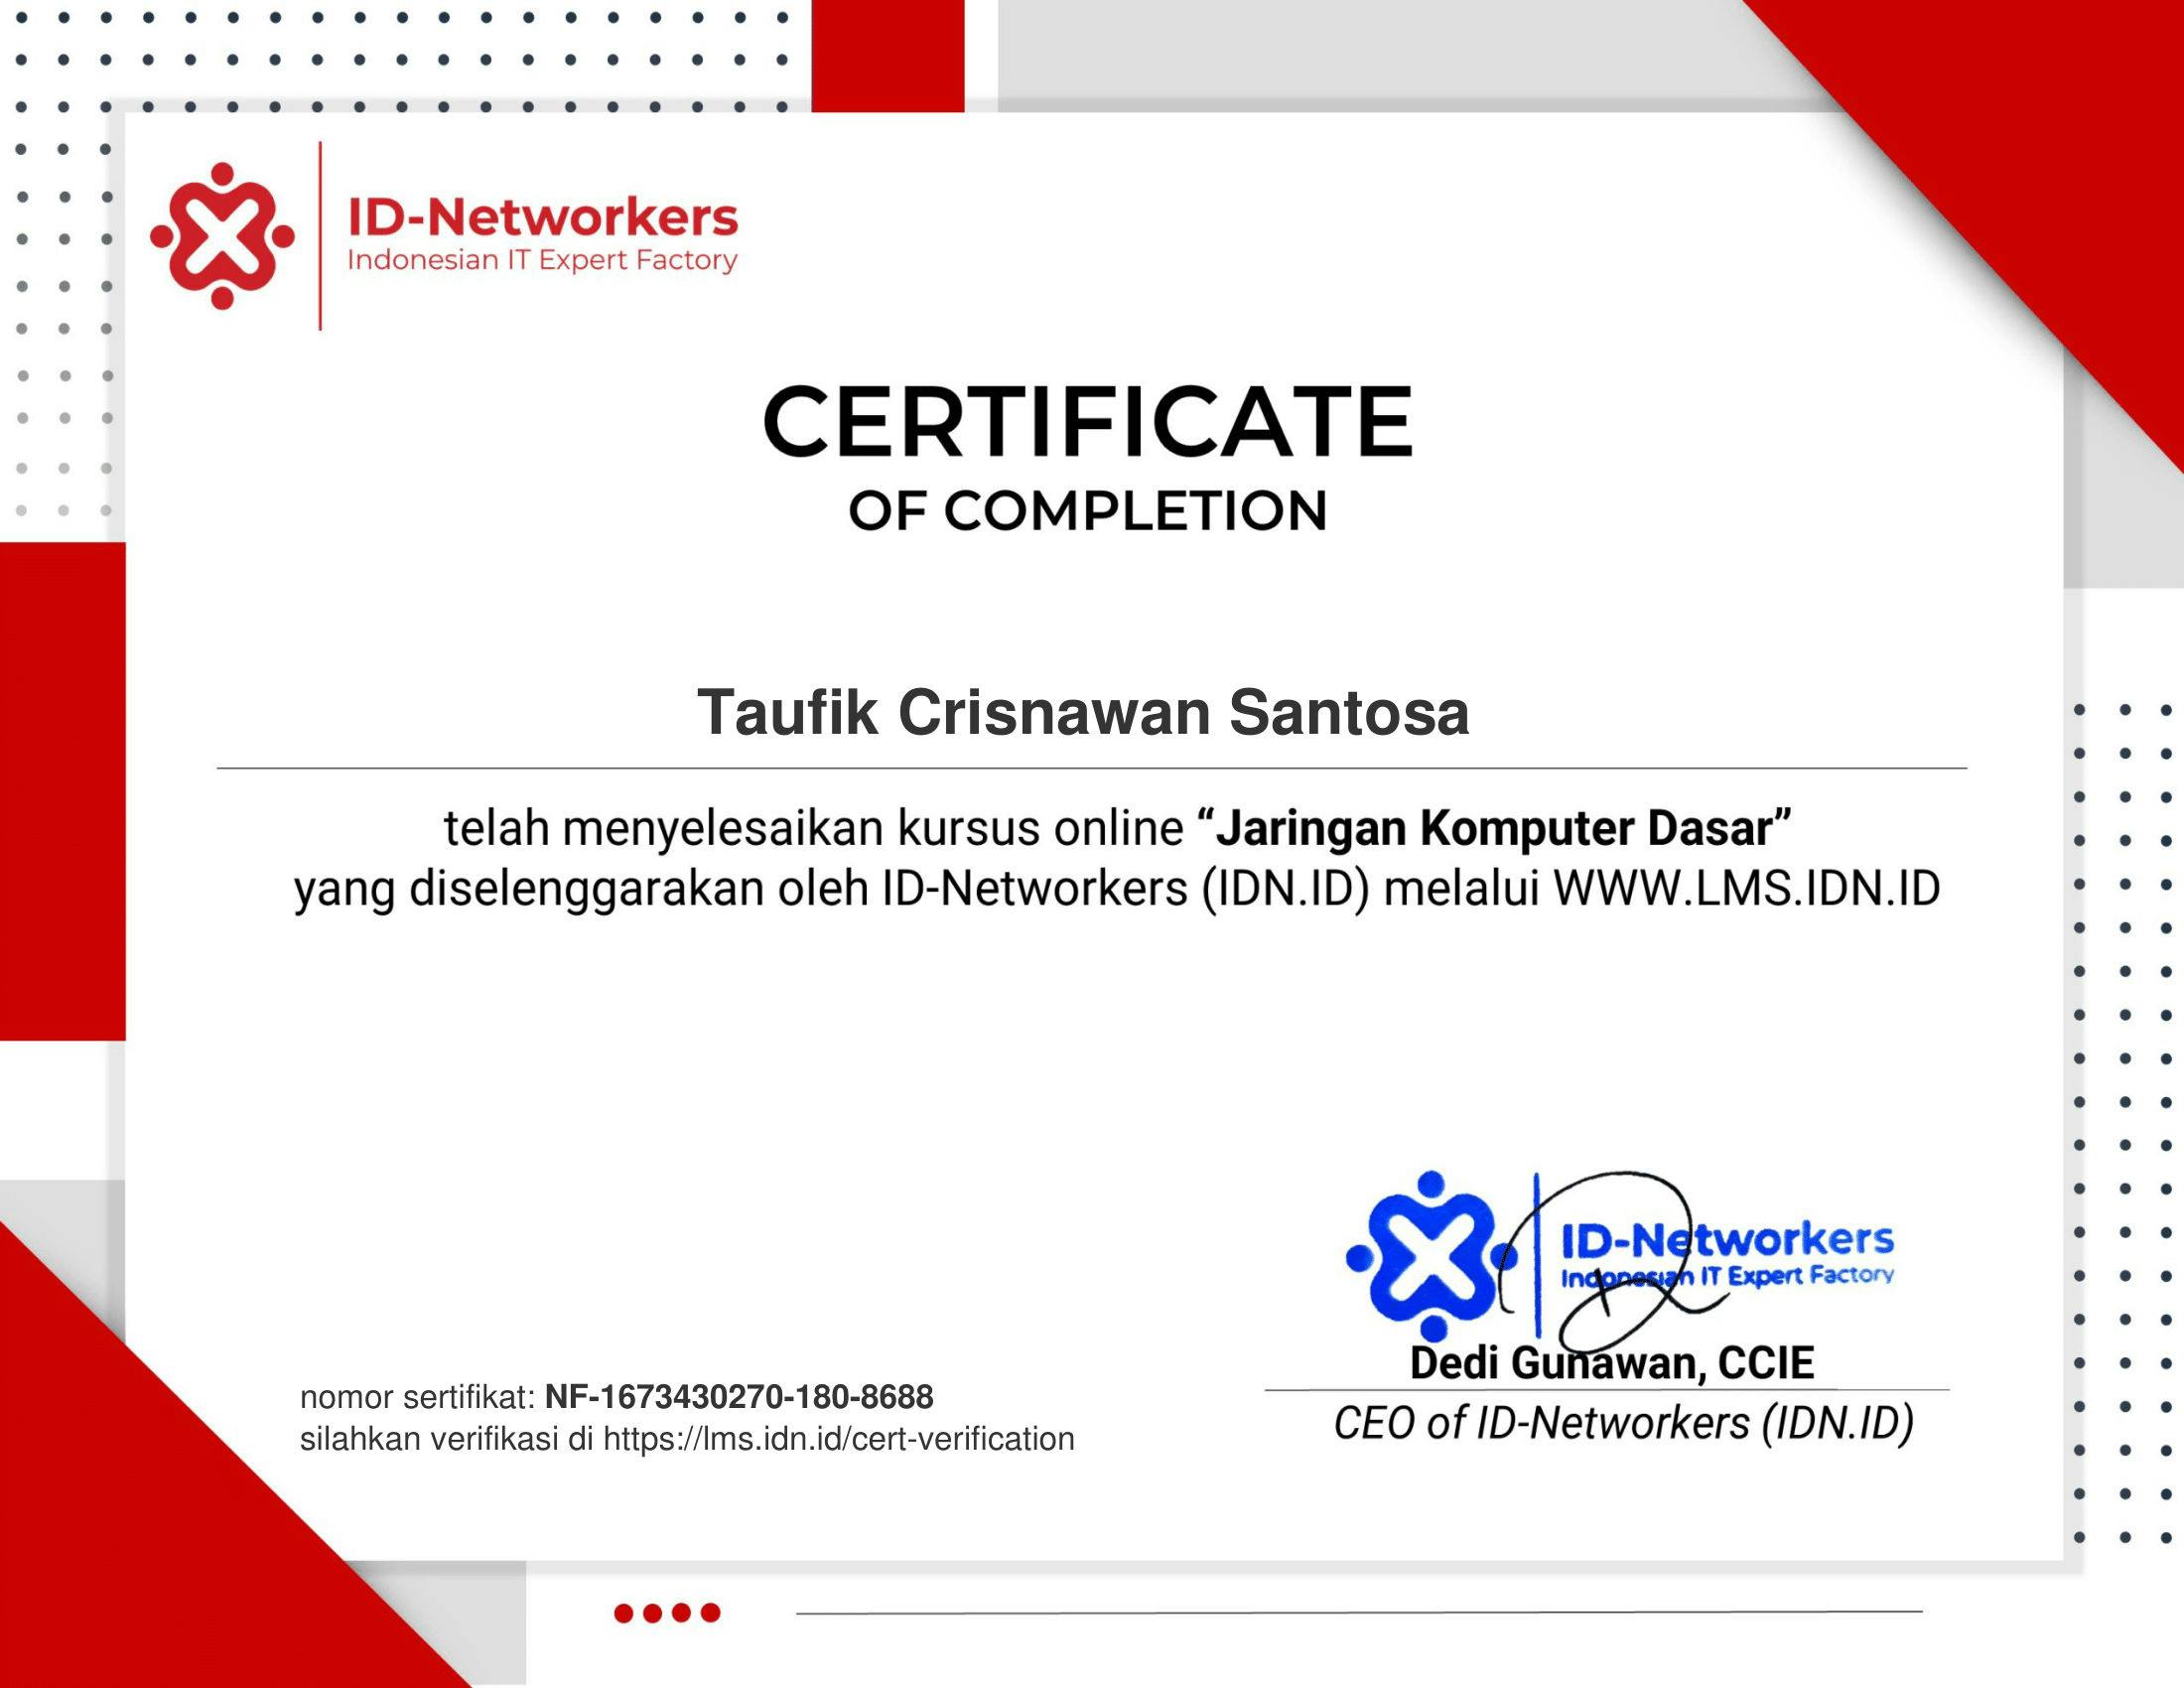 Jaringan Komputer Dasar - ID Networkers certificate